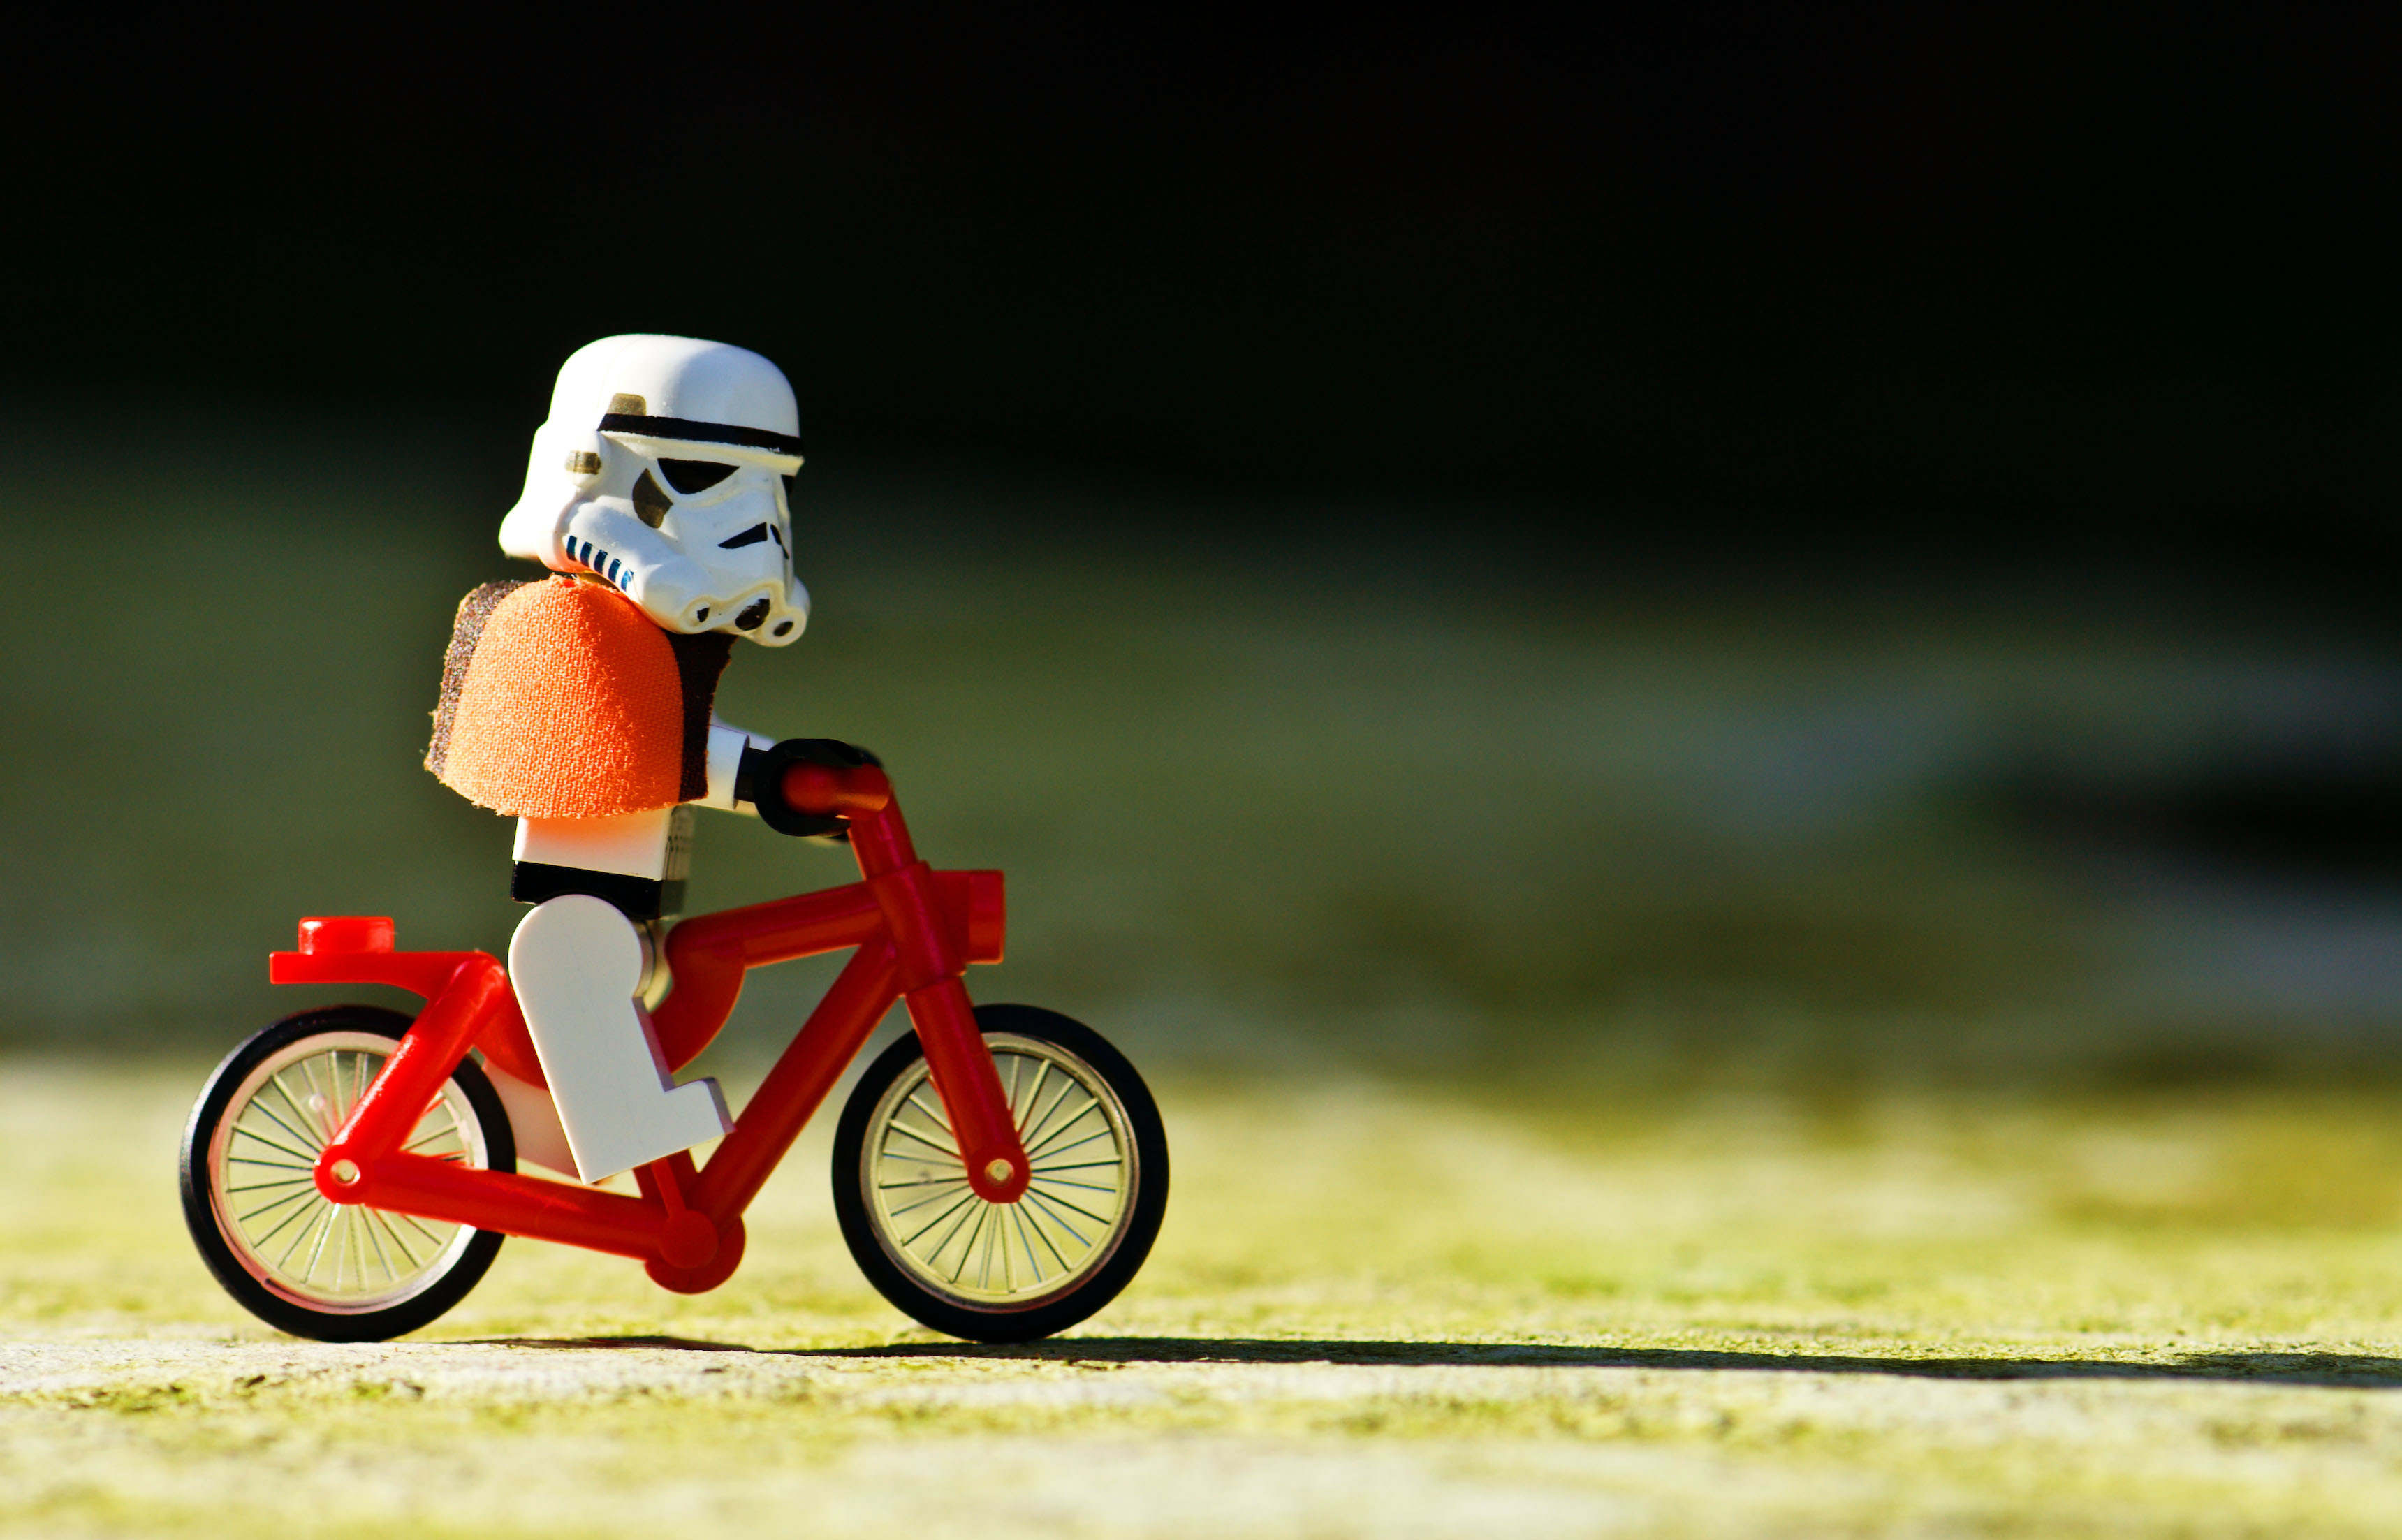 Les héros de Star Wars sur des vélos, vus par des artistes